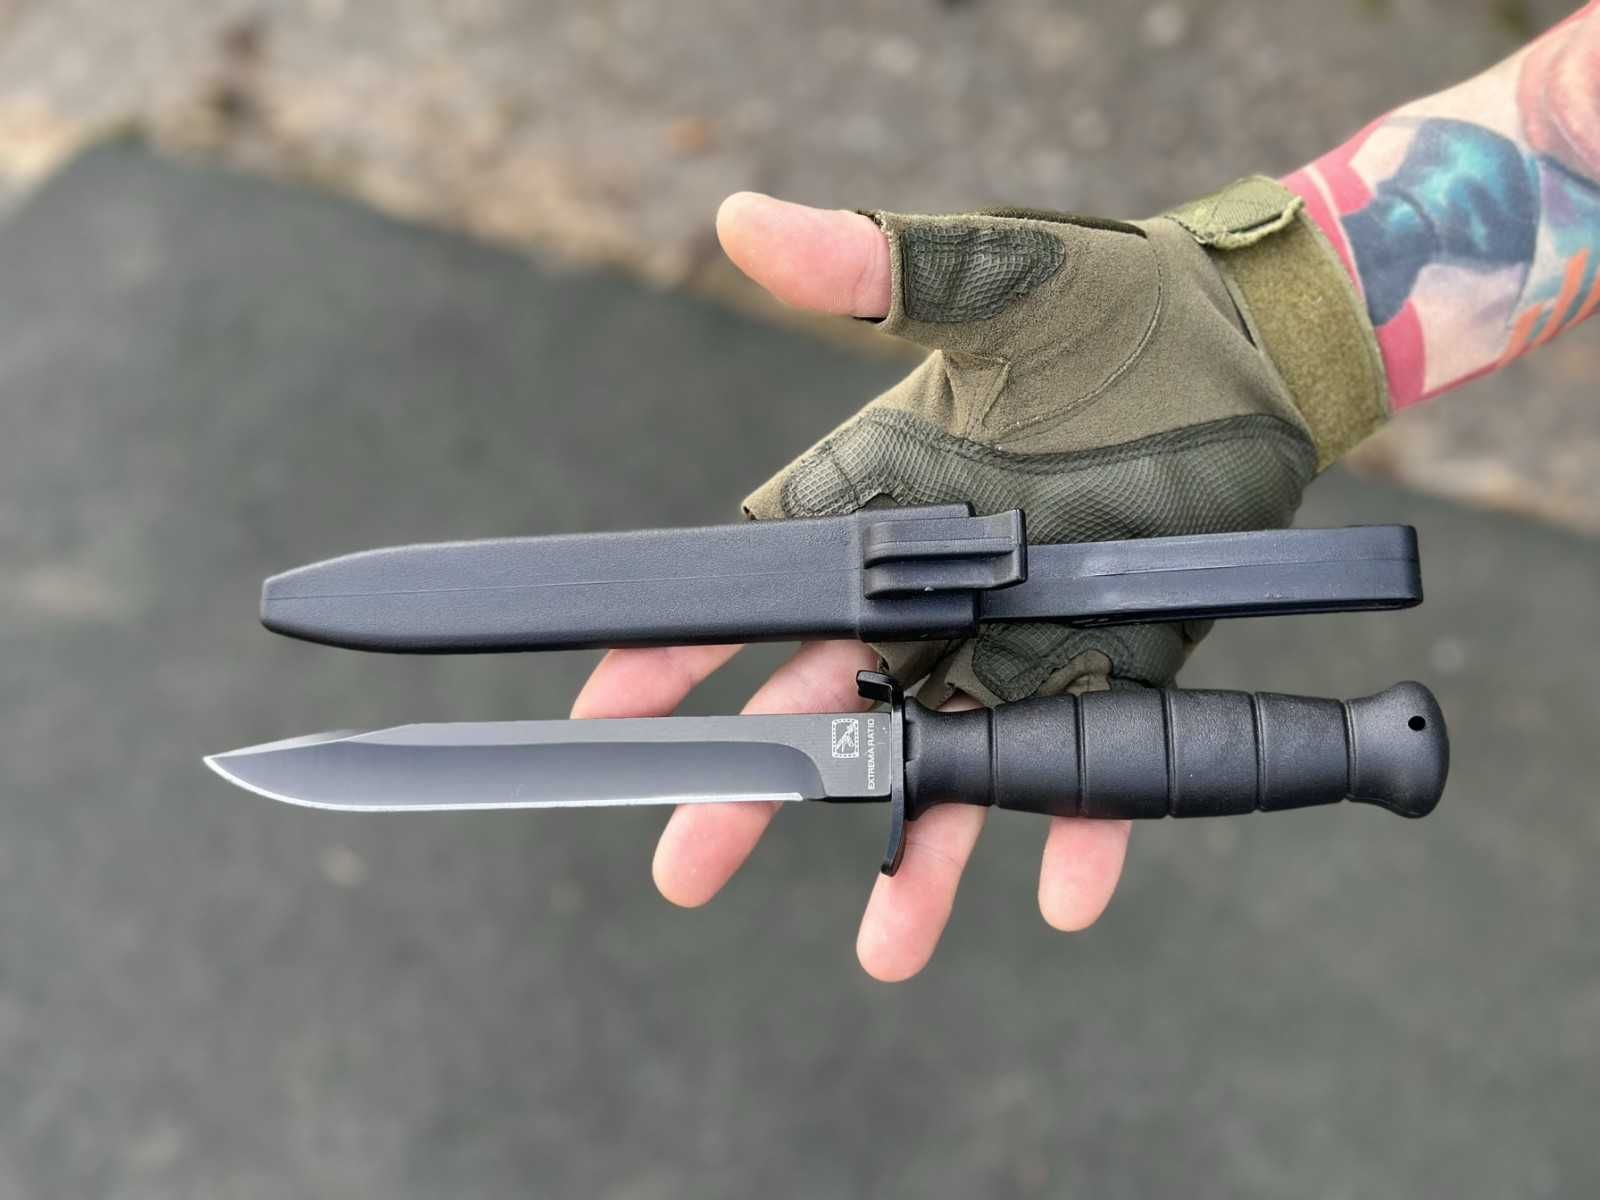 Штурмовой нож MFH Glock FM 78 черный,тактический нож,нож для выживания